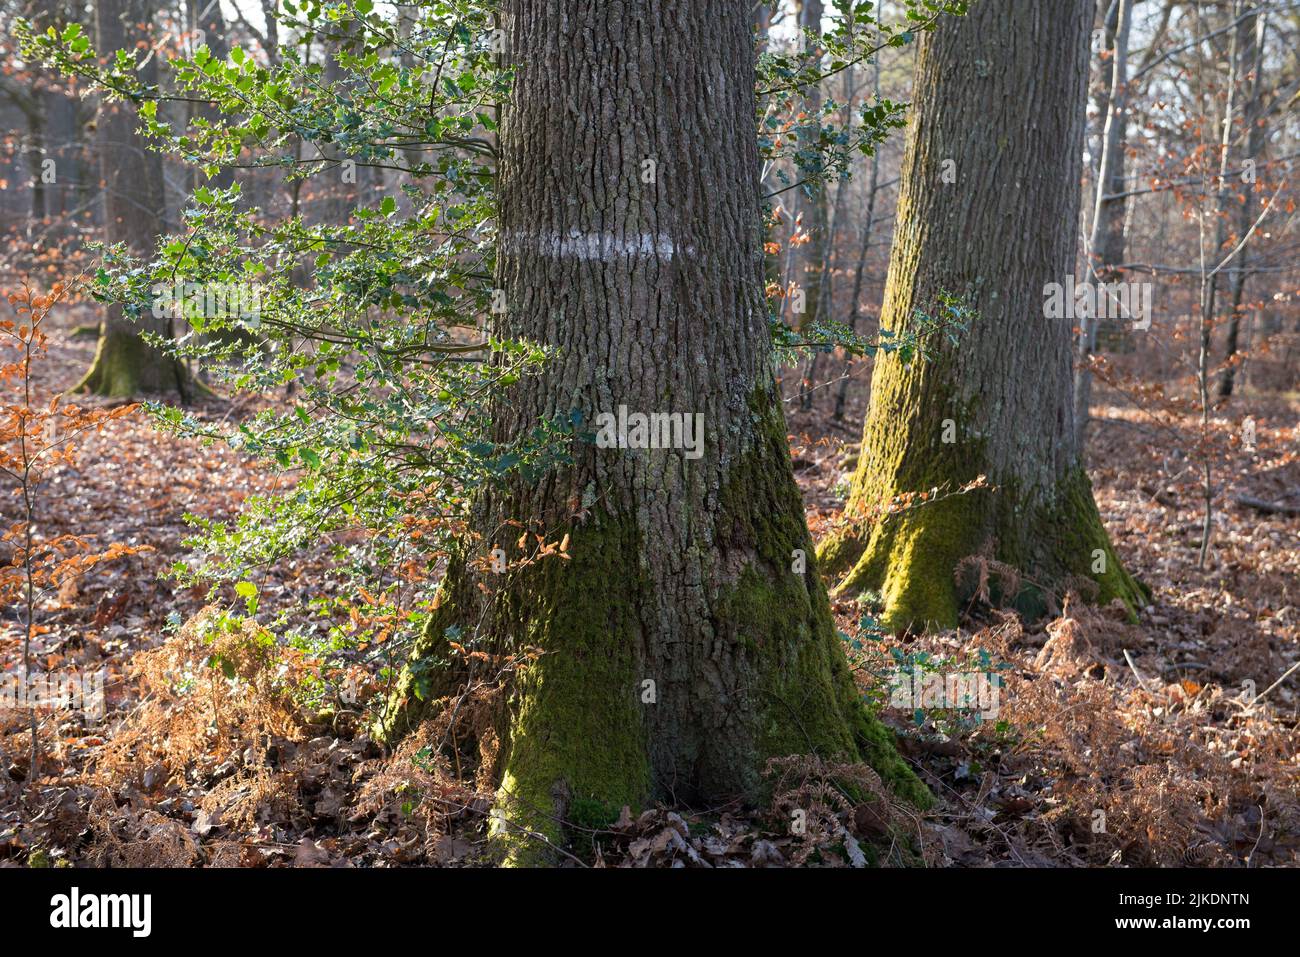 Bosque de Rambouillet, Haute Vallee de Chevreuse Parque Natural Regional, departamento de Yvelines, la región Ile-de-France, Francia, Europa. Foto de stock